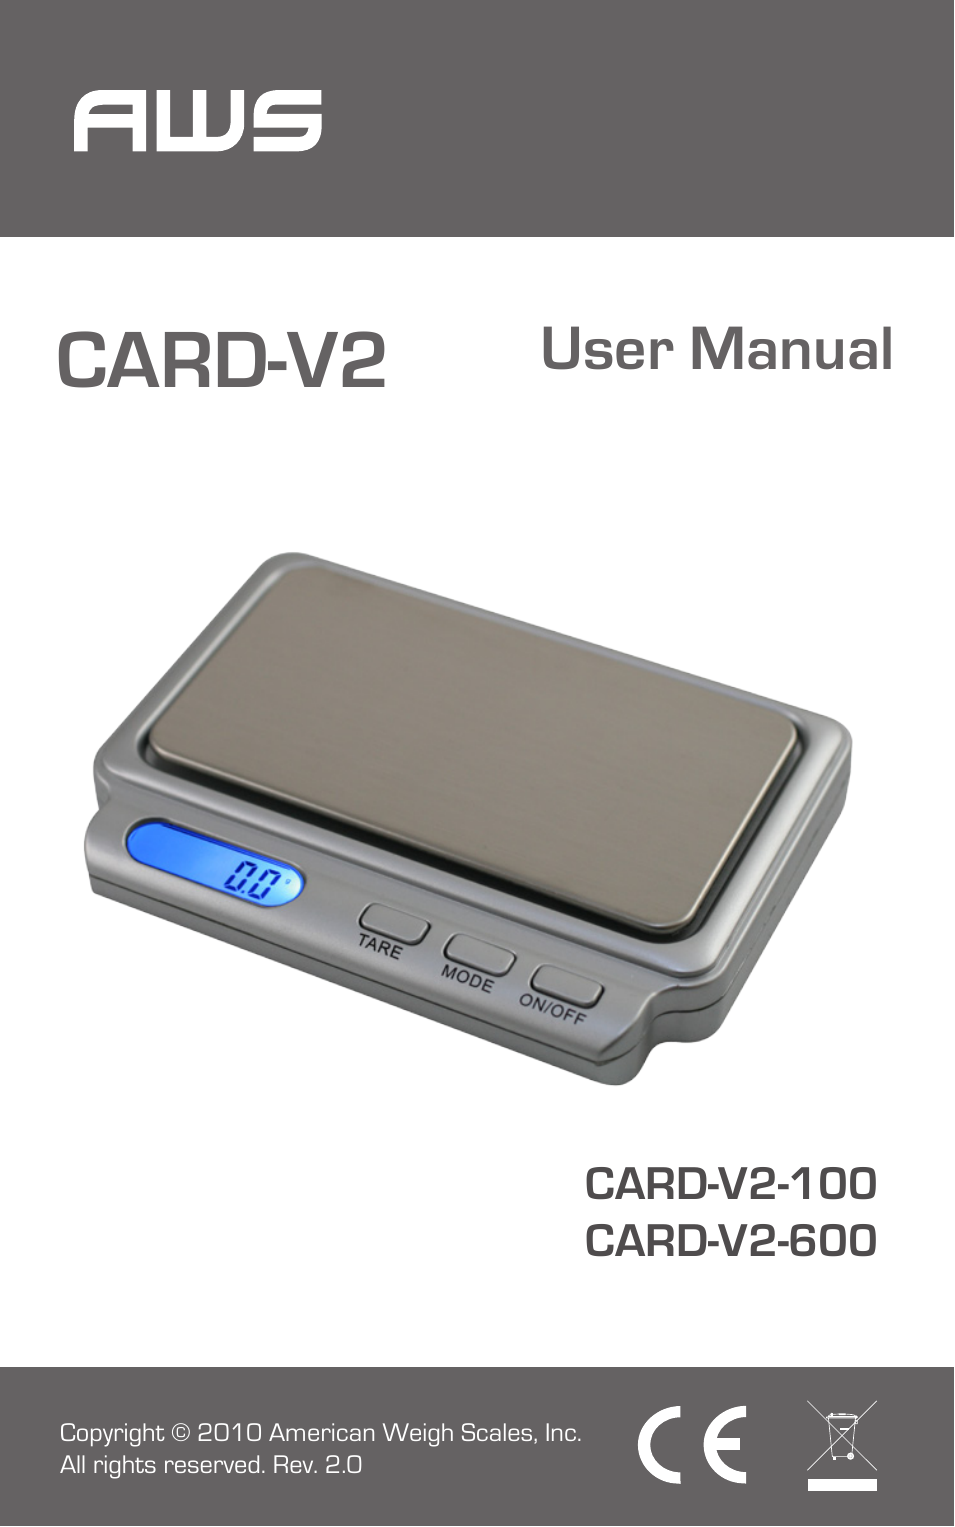 Card-V2-100